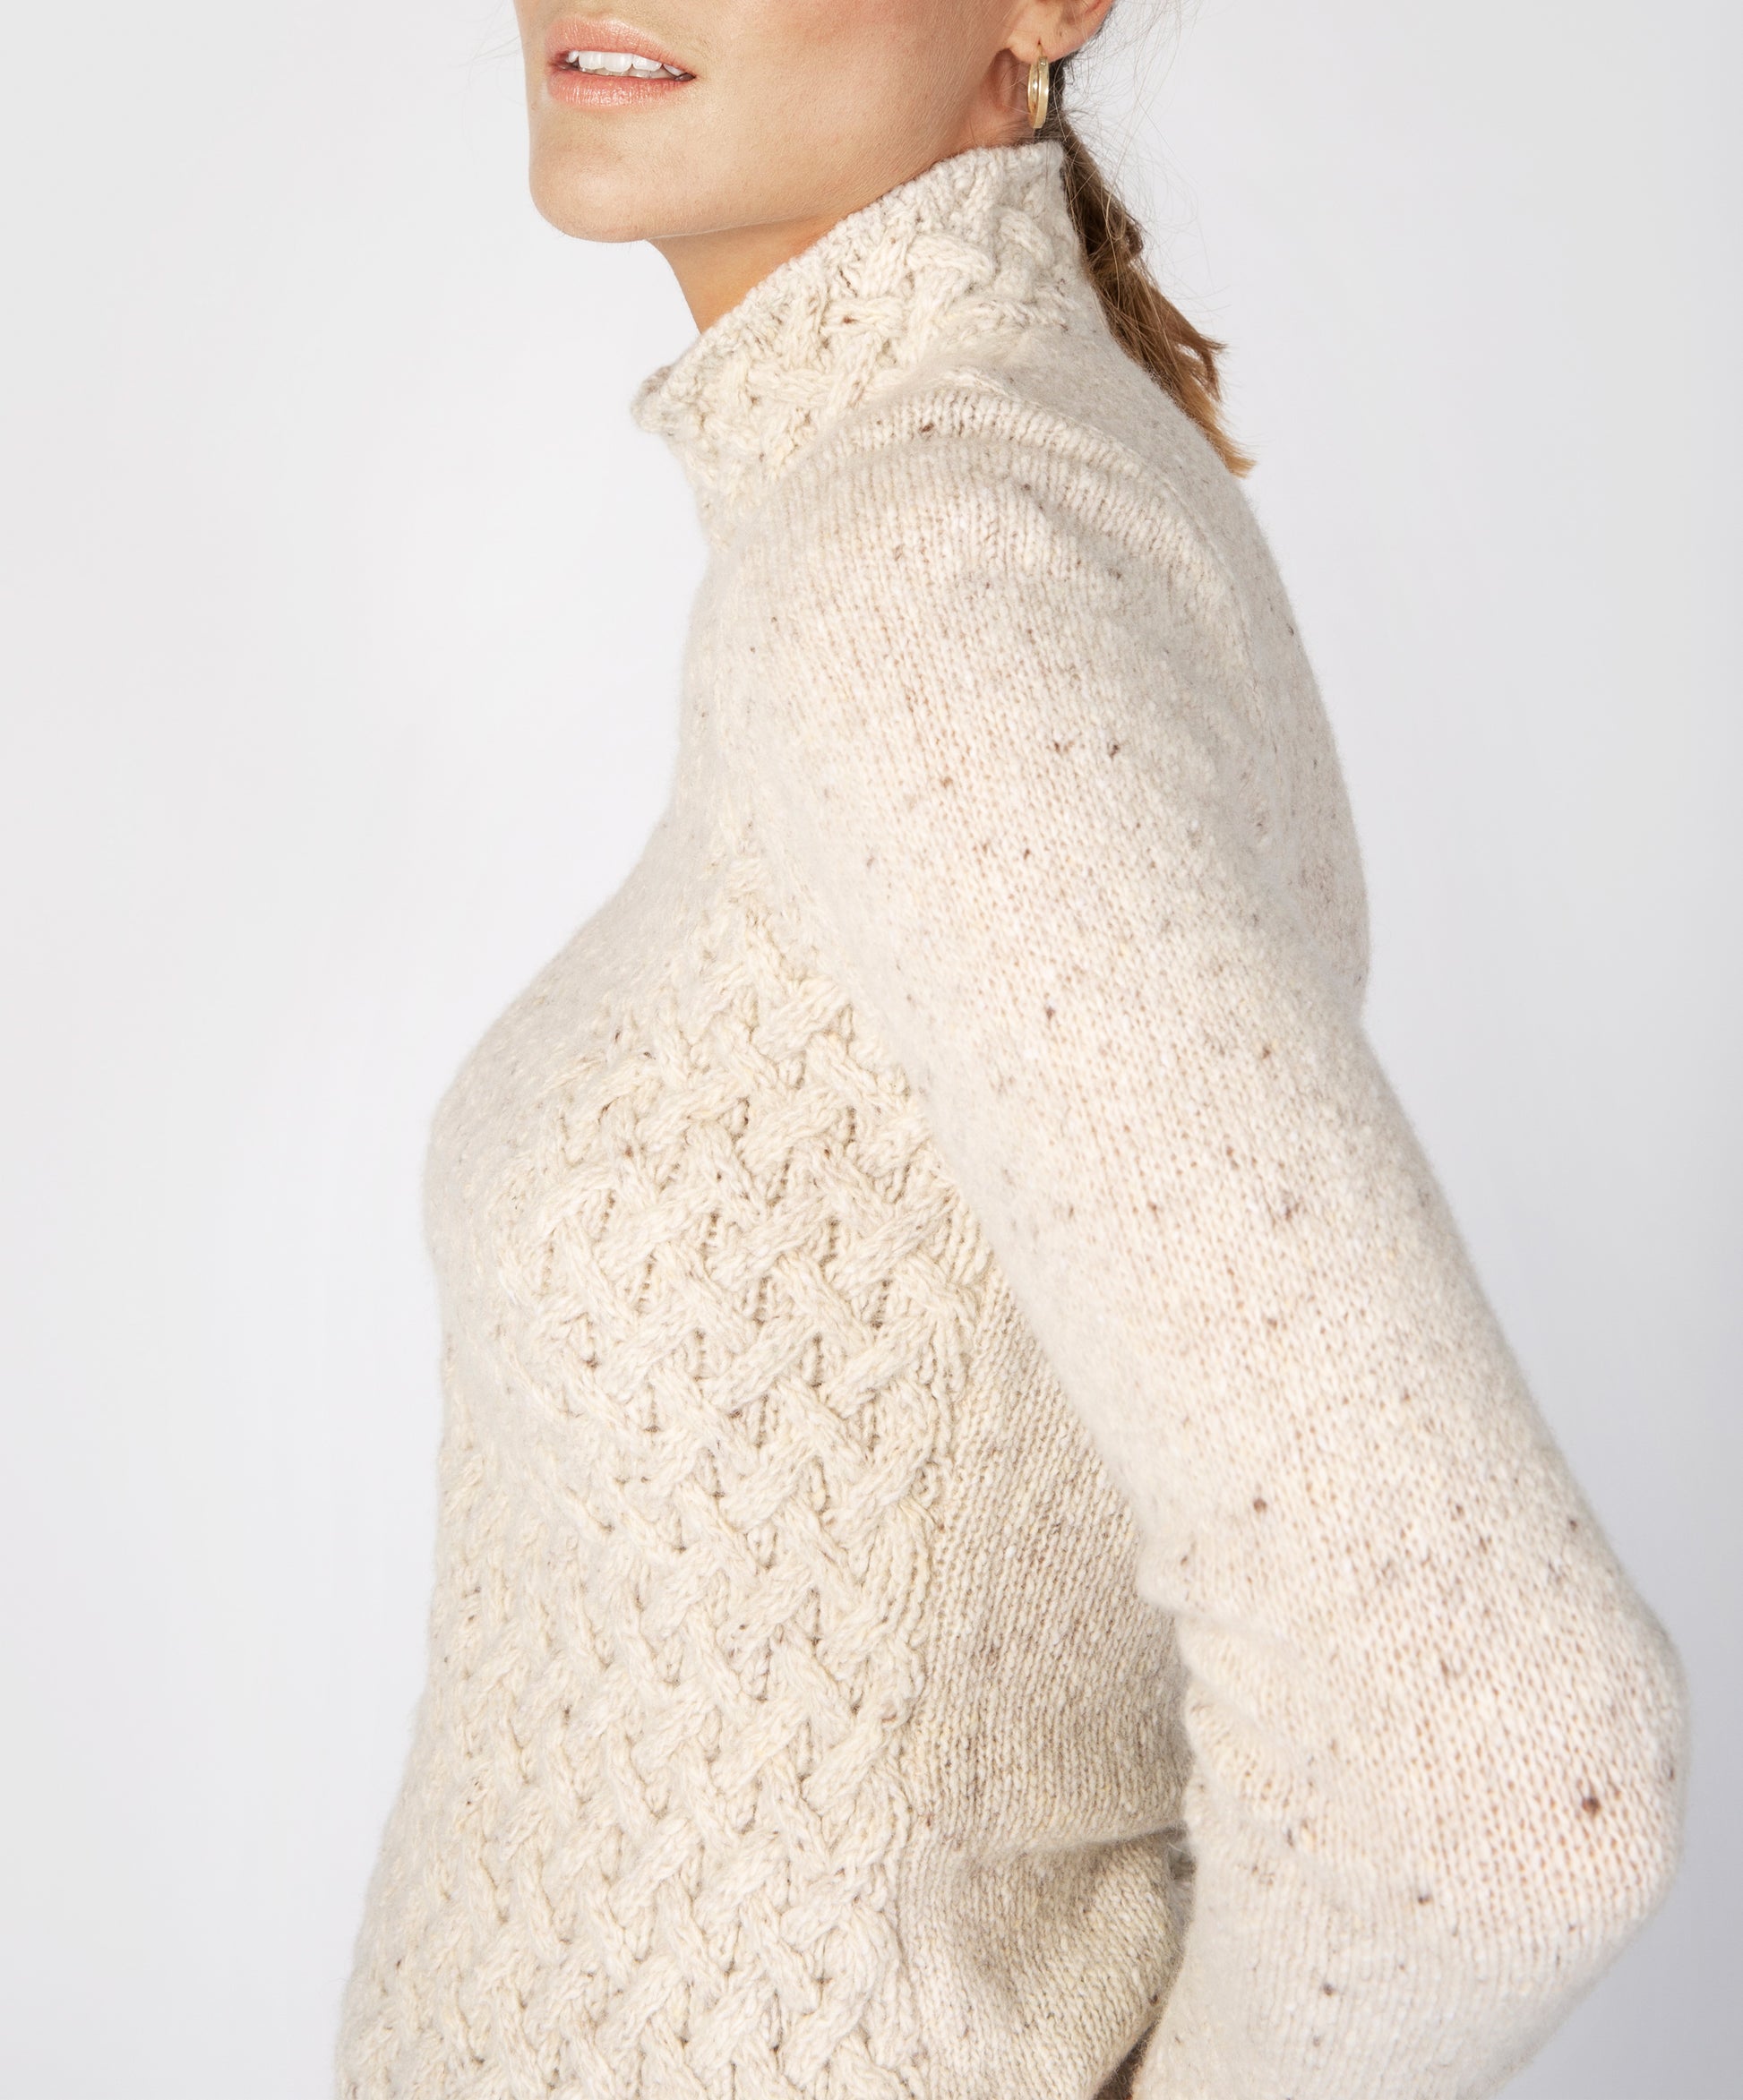 IrelandsEye Knitwear Trellis Sweater Chalkstone